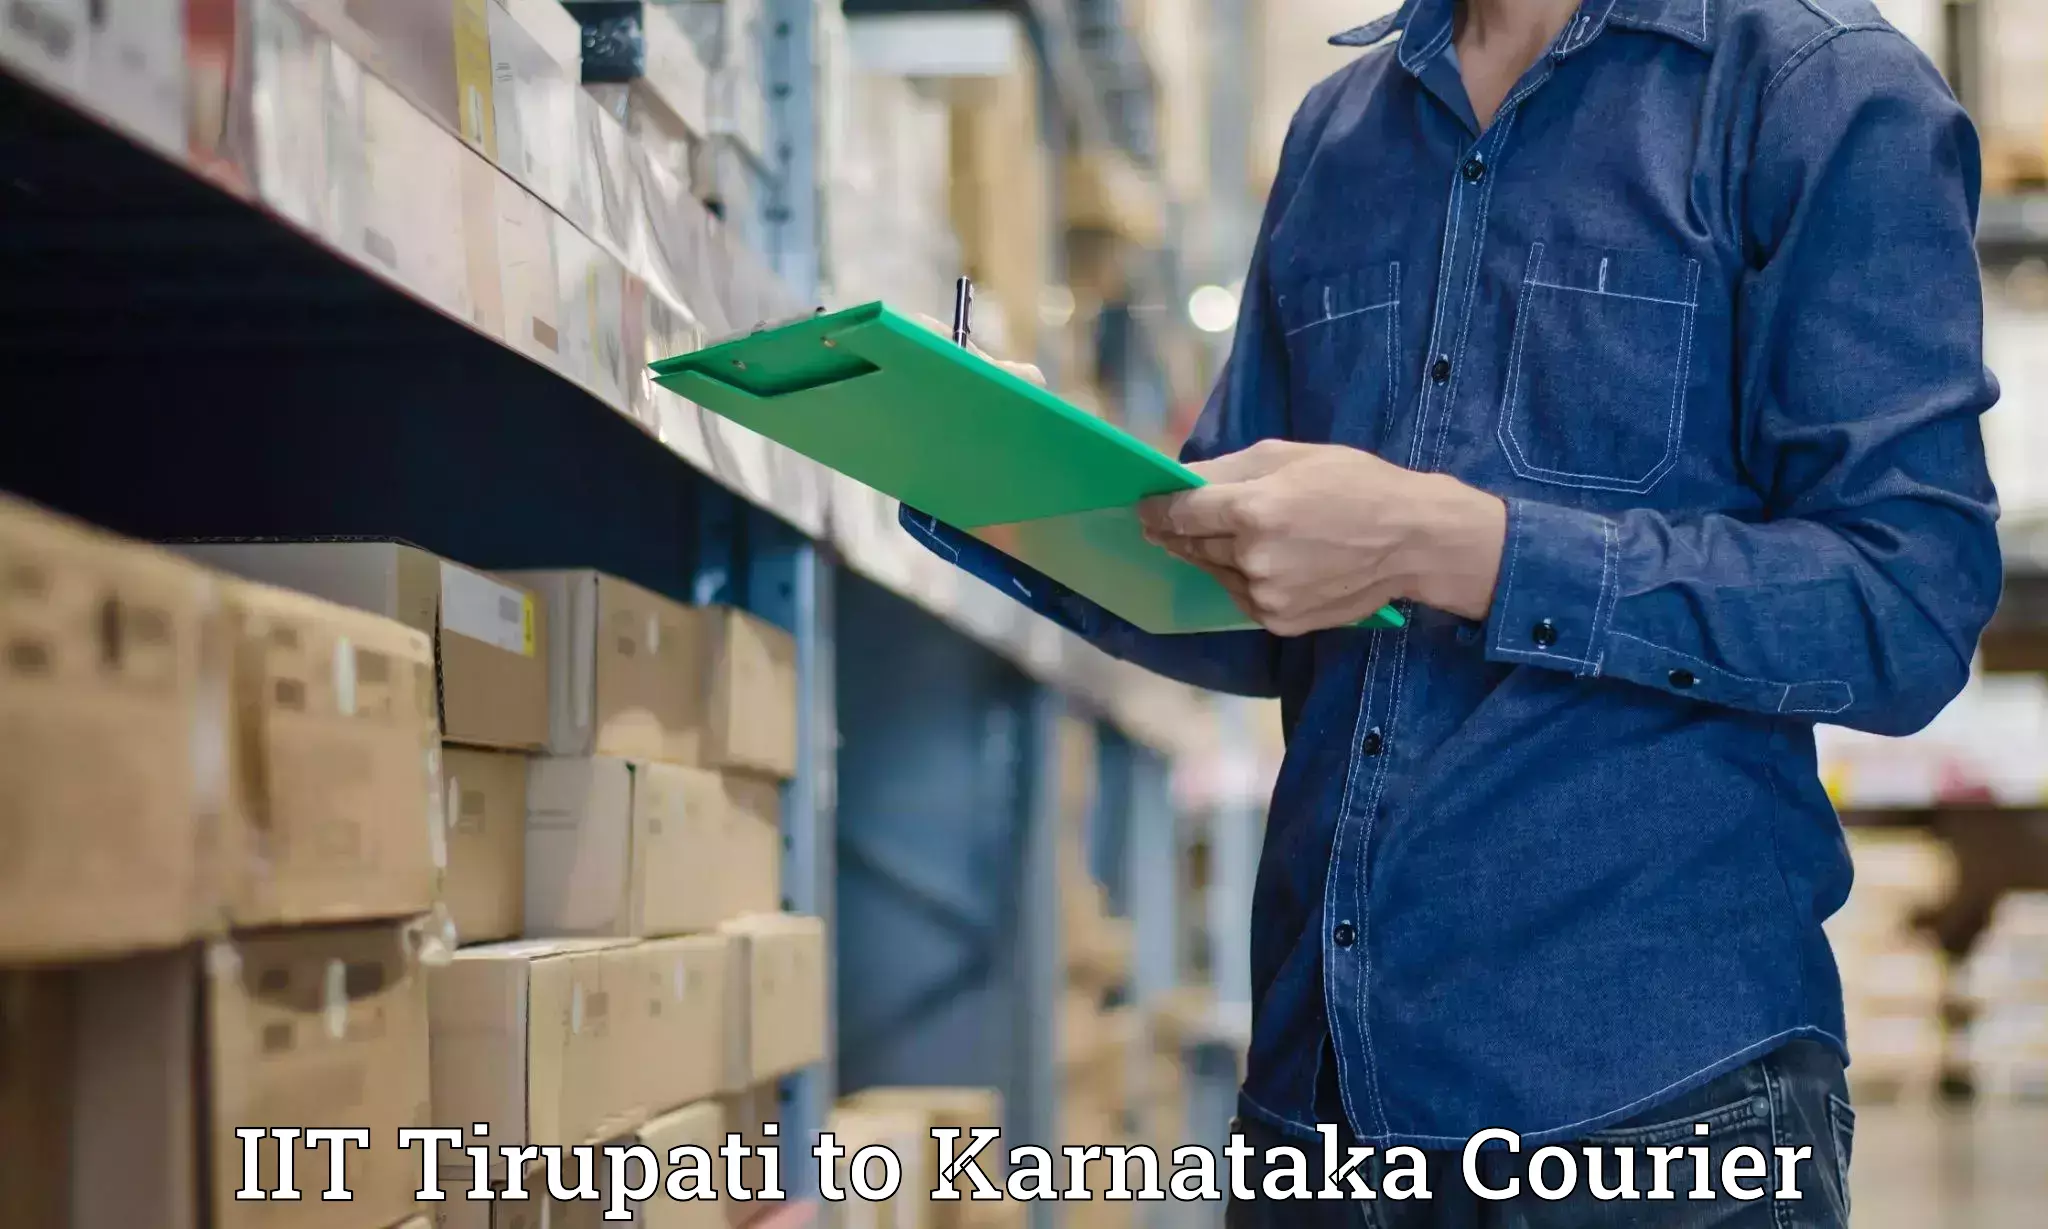 On-demand courier IIT Tirupati to Baindur